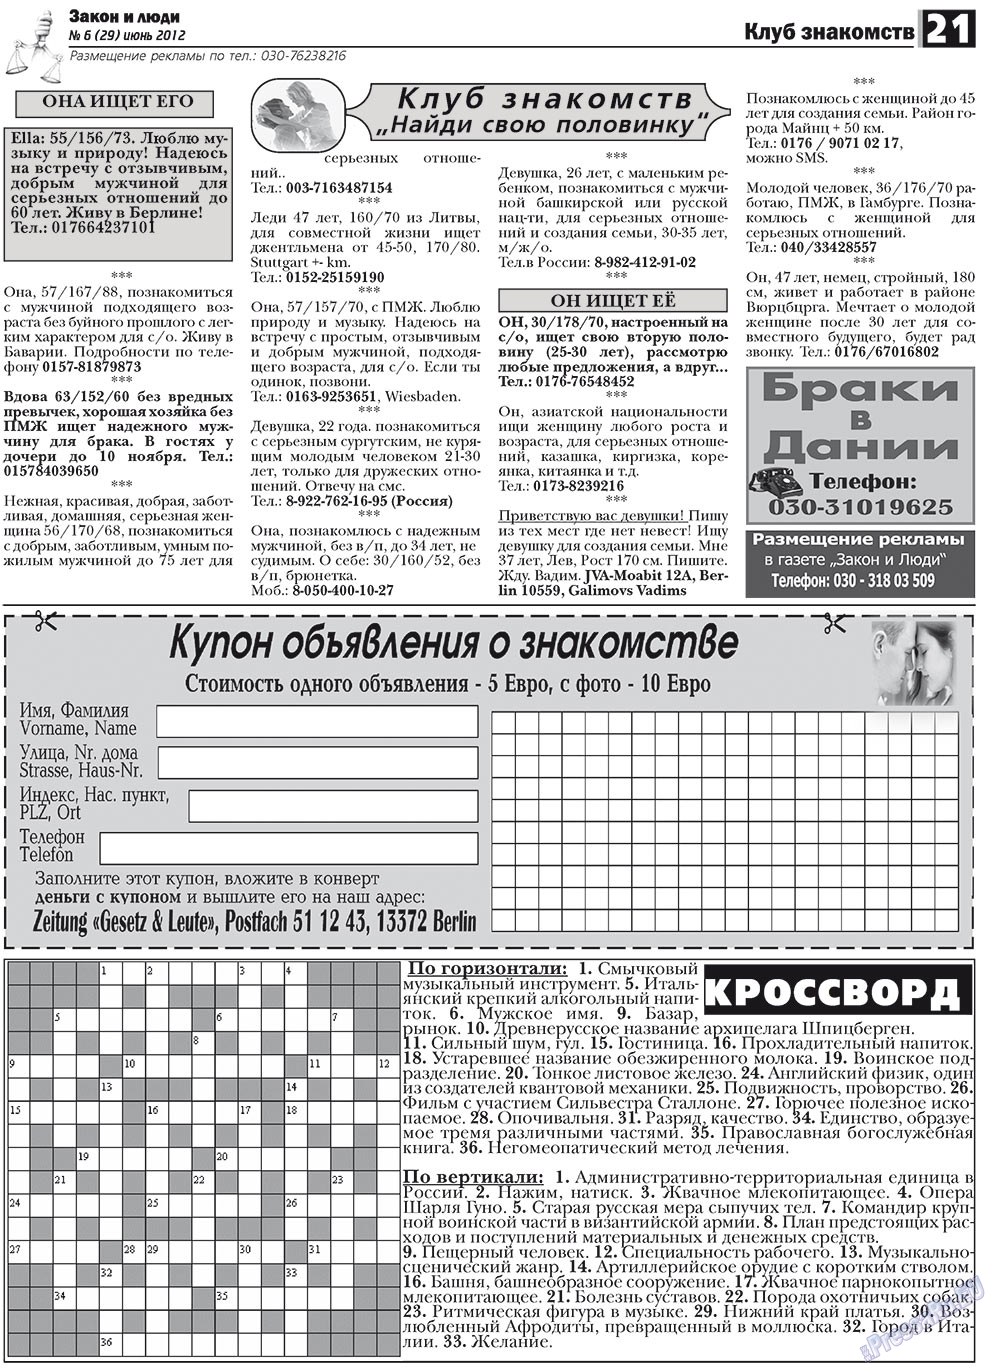 Закон и люди, газета. 2012 №6 стр.21